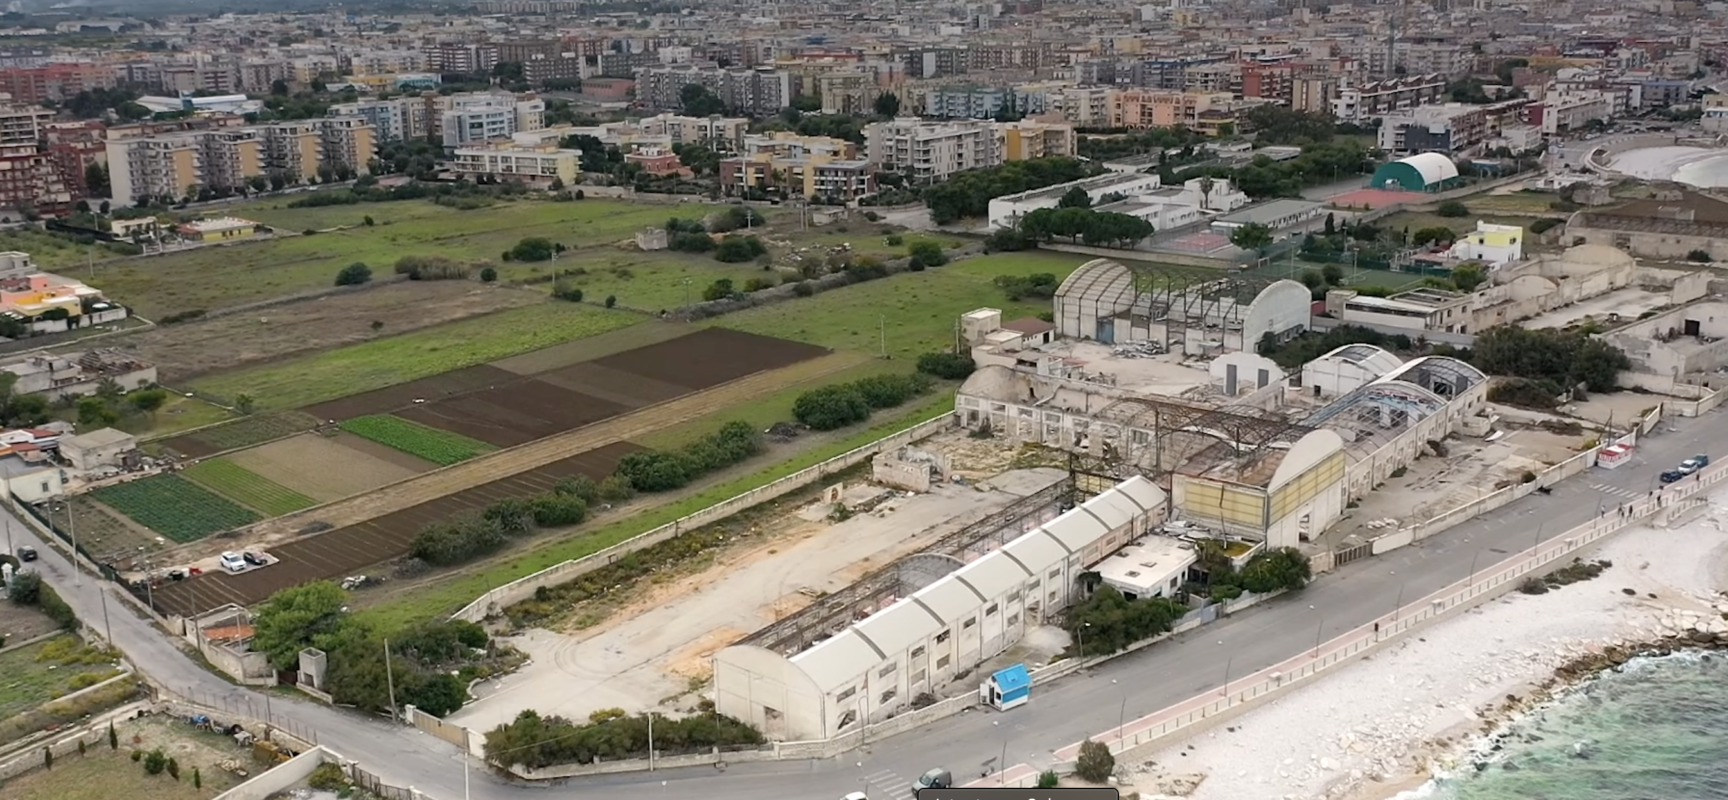 Lottizzazione Bi Marmi, “Come conciliare i palazzi a levante con Parco Naturale Santa Croce?”